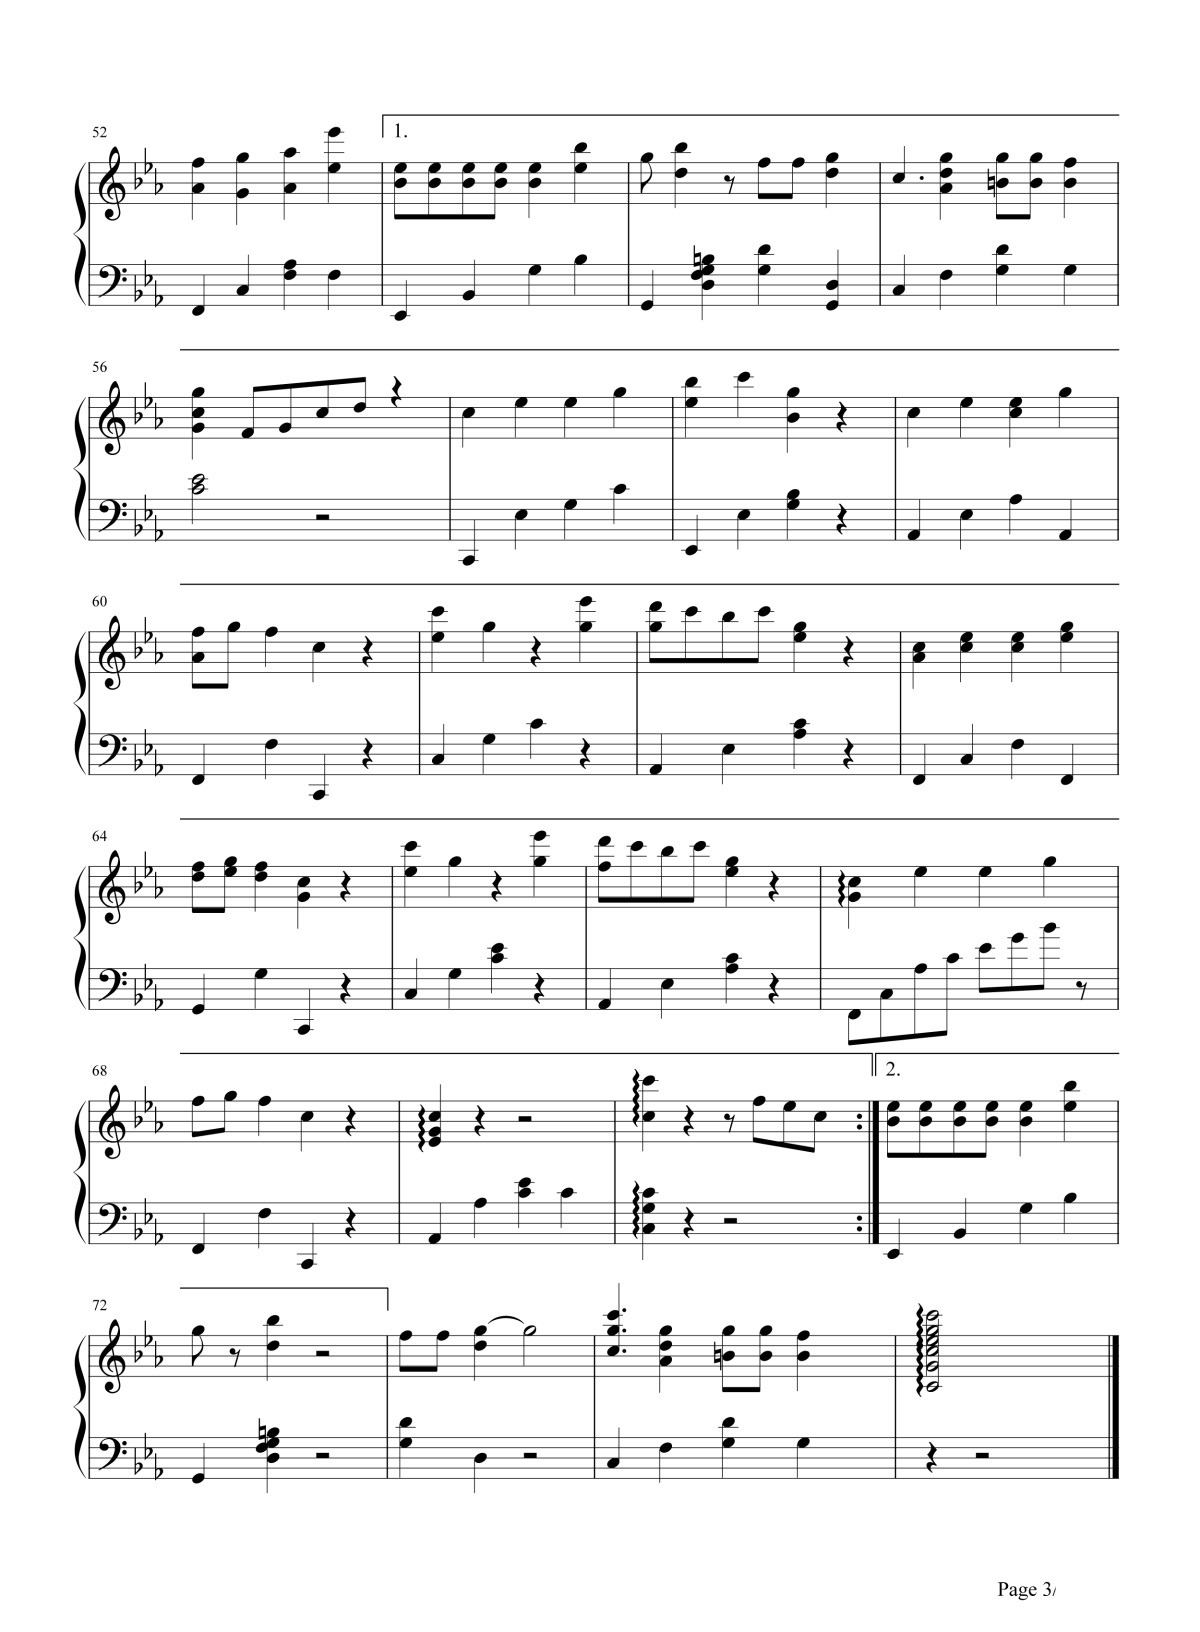 【梦中的额吉】的钢琴谱简谱 – 乌达木
